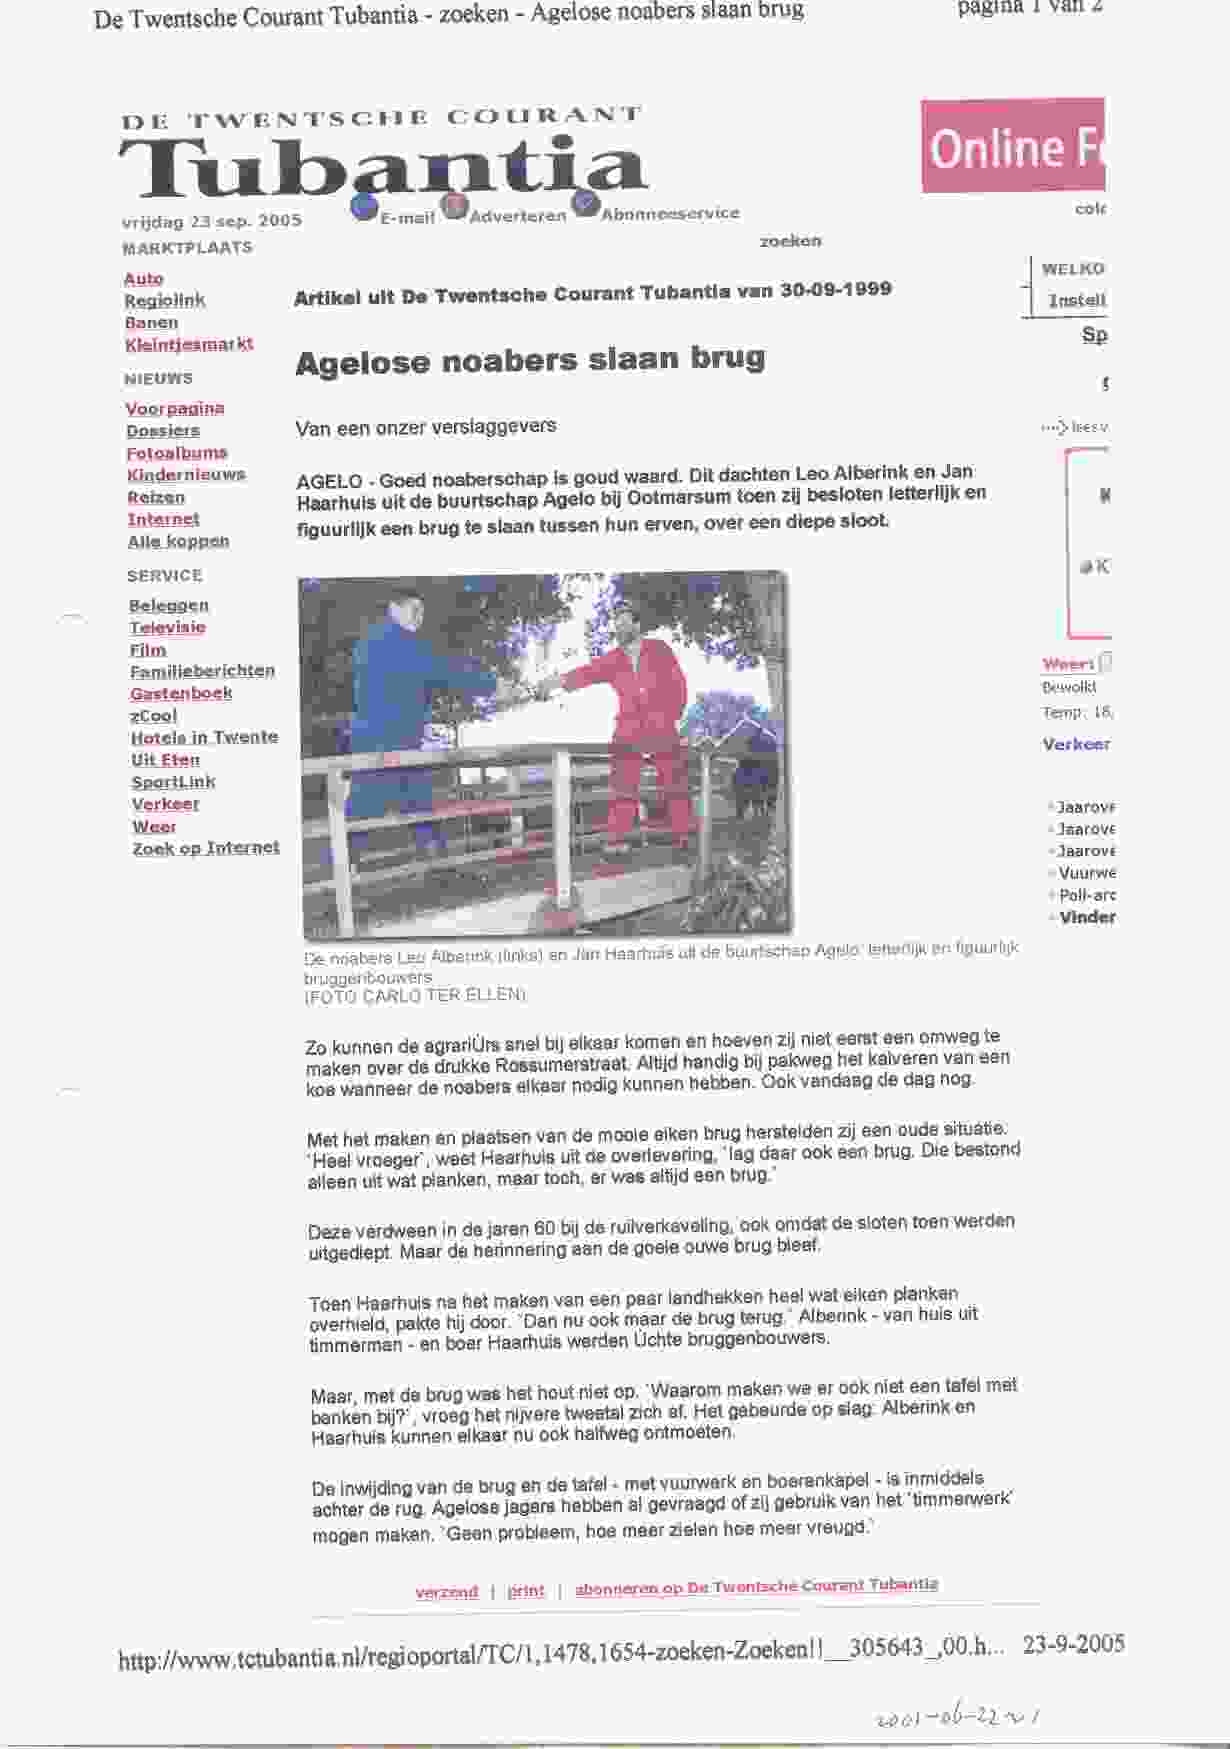 Gespreks onderwerp tijdens barbecue op 2001-05-22